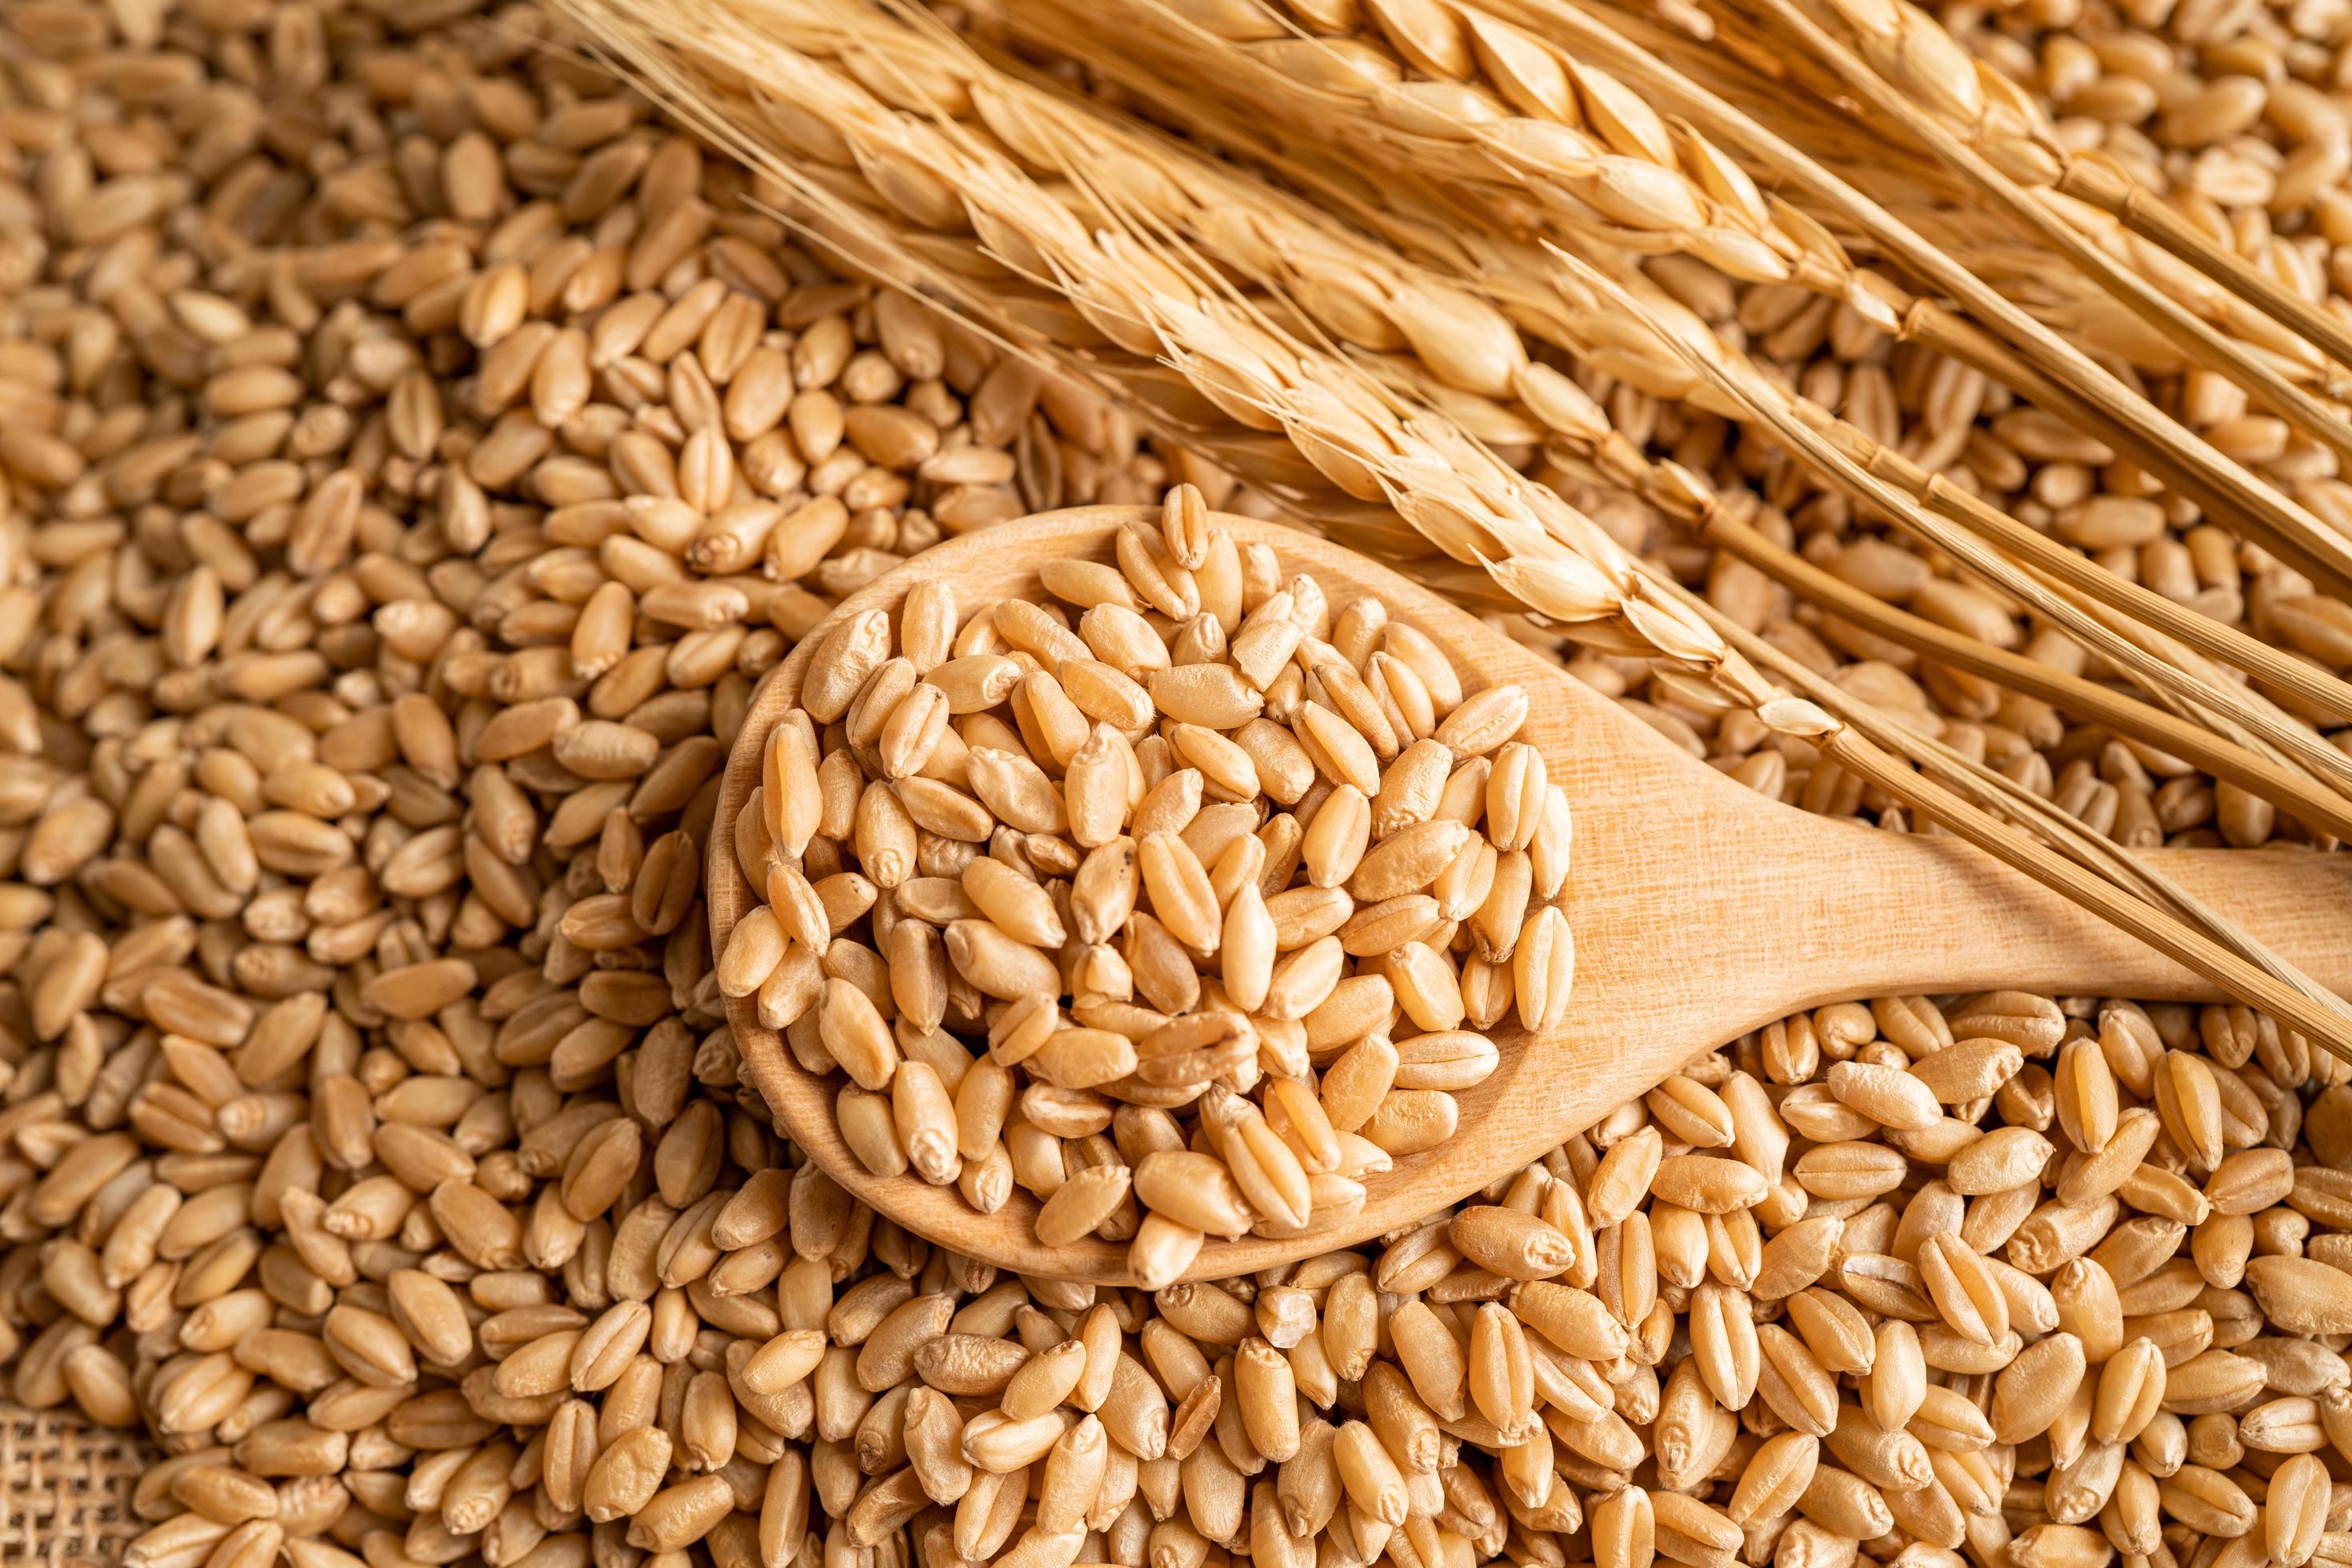 Mercado para farinha de trigo orgânica cresce no Brasil